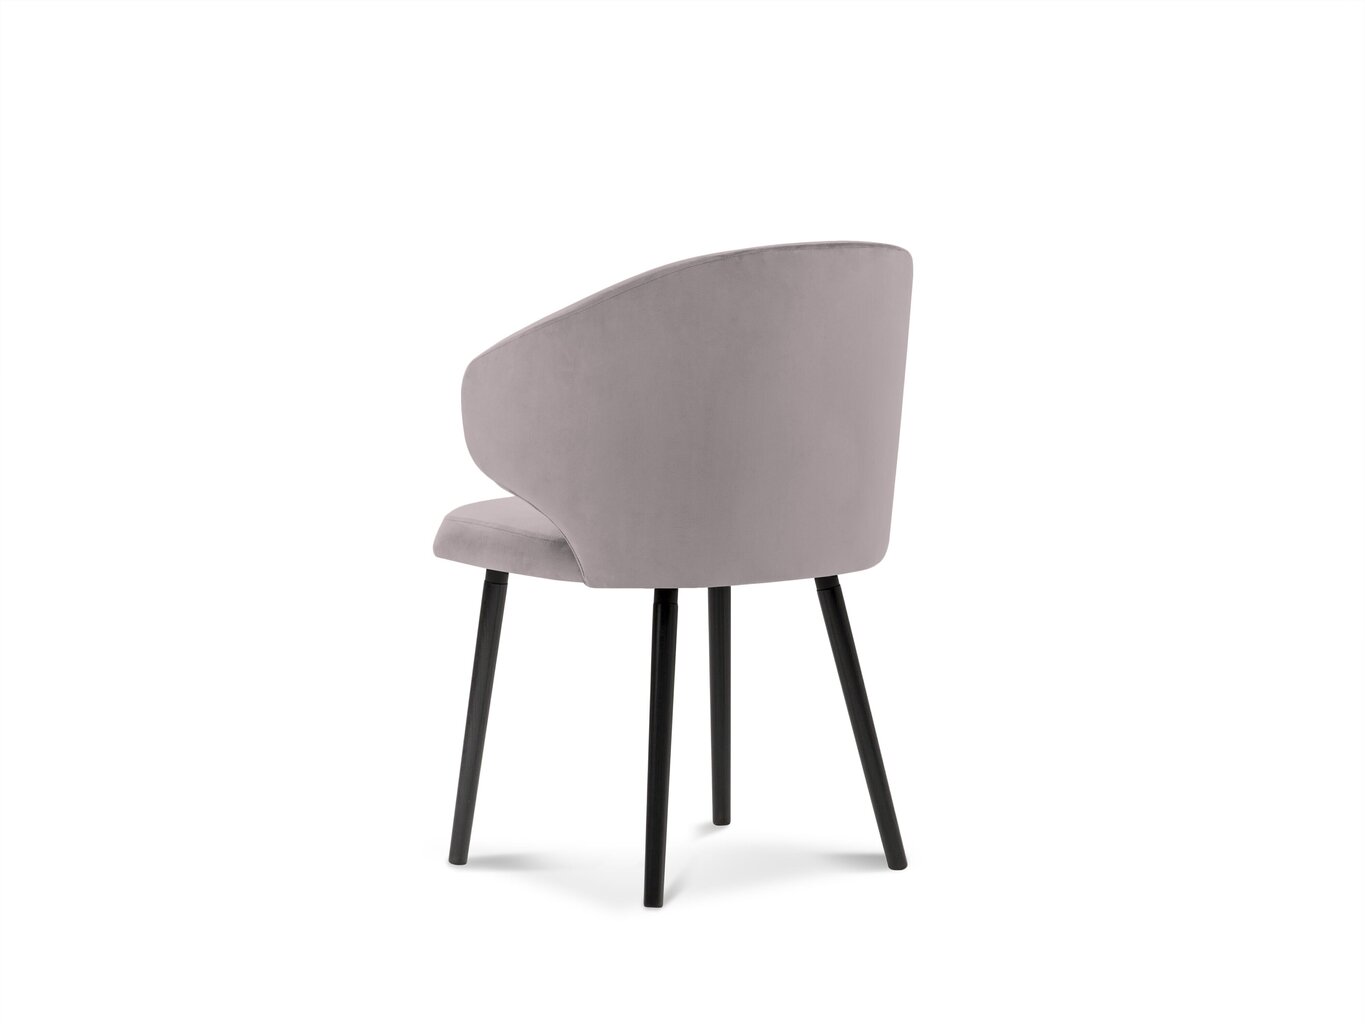 2-u krēslu komplekts Windsor and Co Nemesis, rozā cena un informācija | Virtuves un ēdamistabas krēsli | 220.lv